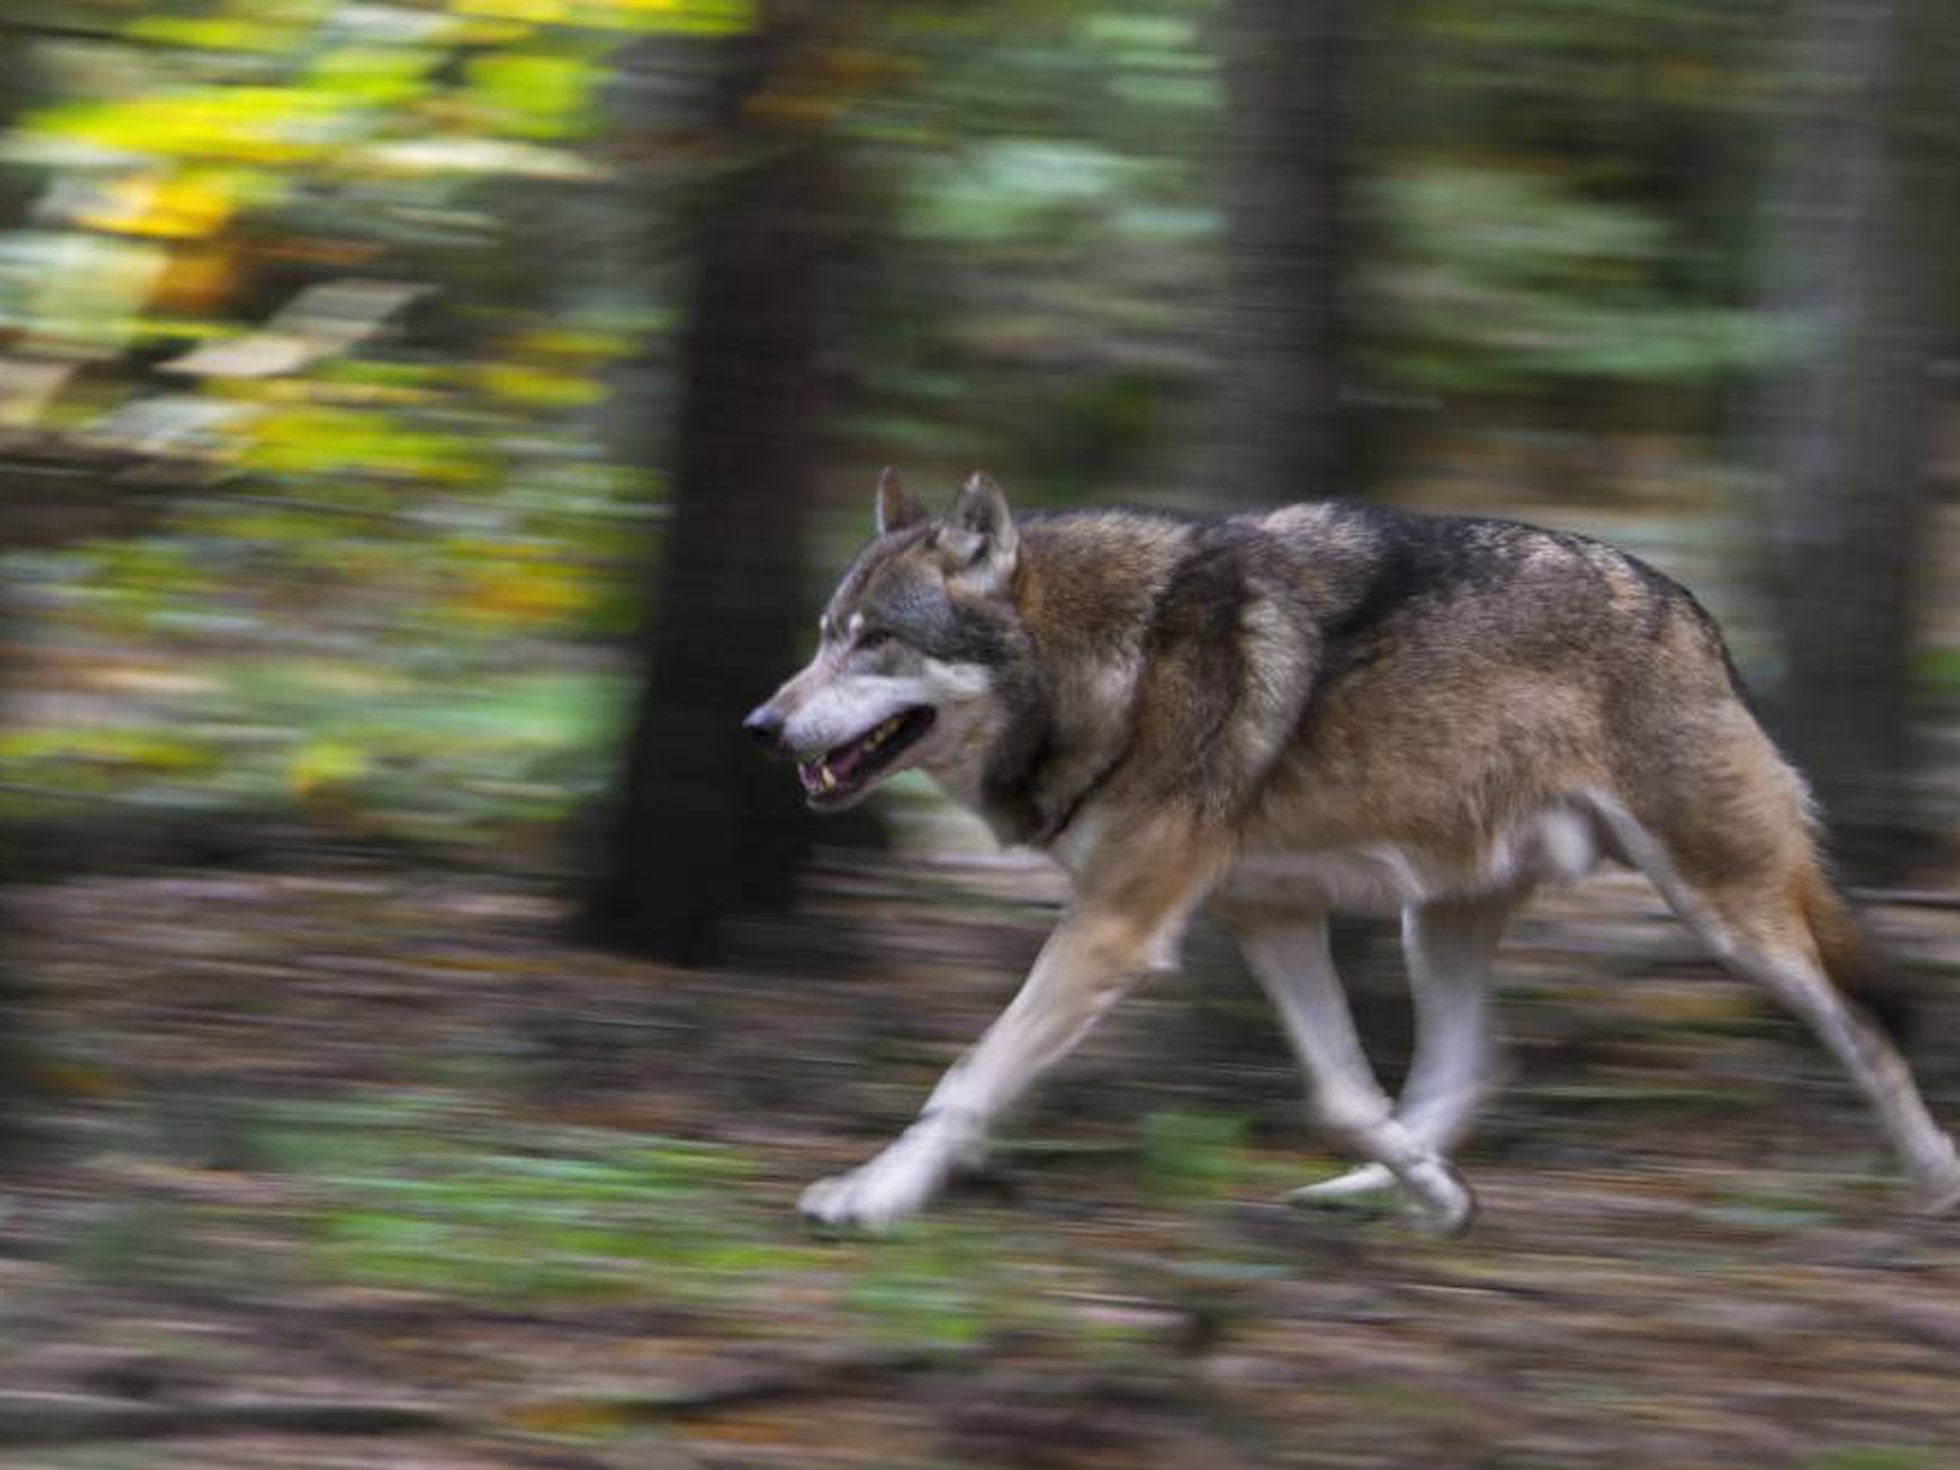 Detenido por caza furtiva un millonario que odia a los lobos | Mundo animal  | EL PAÍS